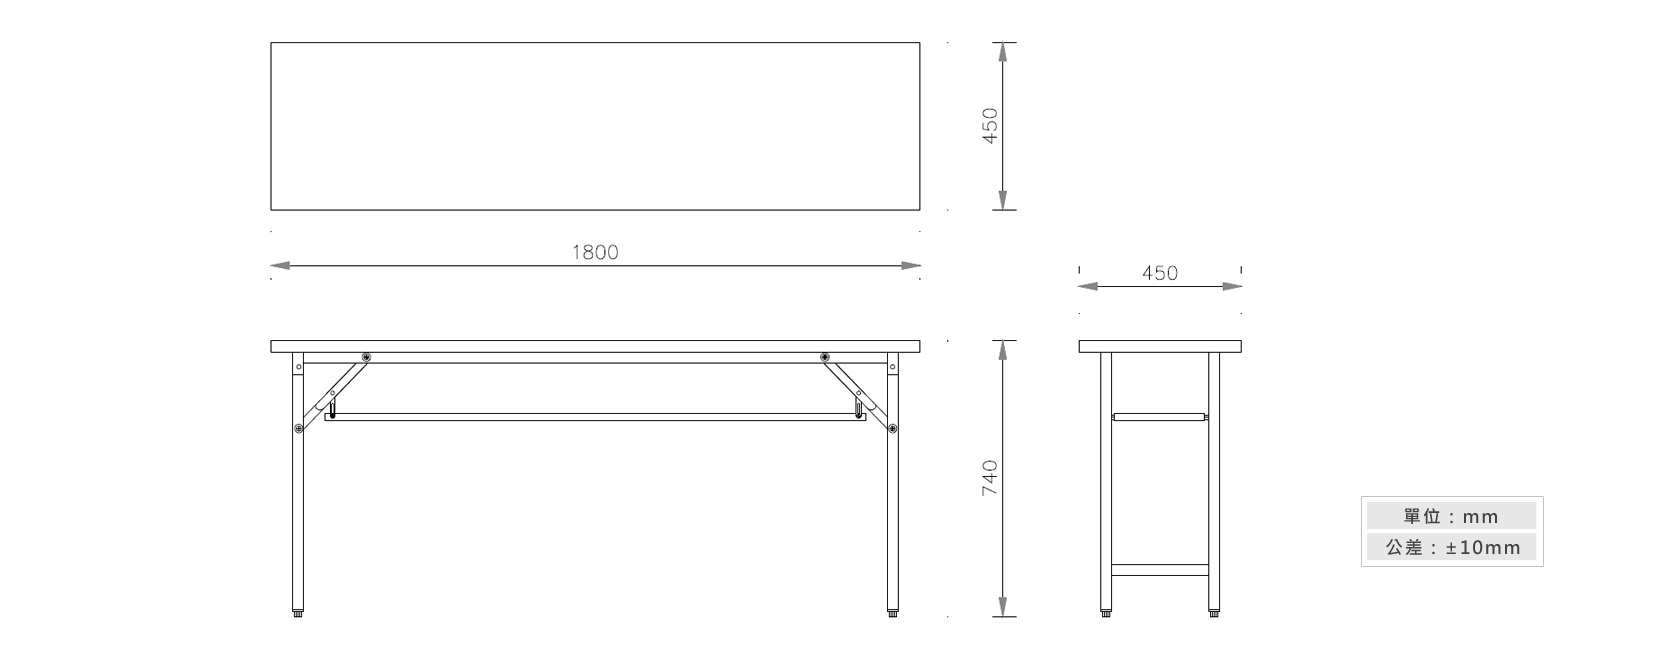 1-24 折合式會議桌(夾板桌面)材質說明